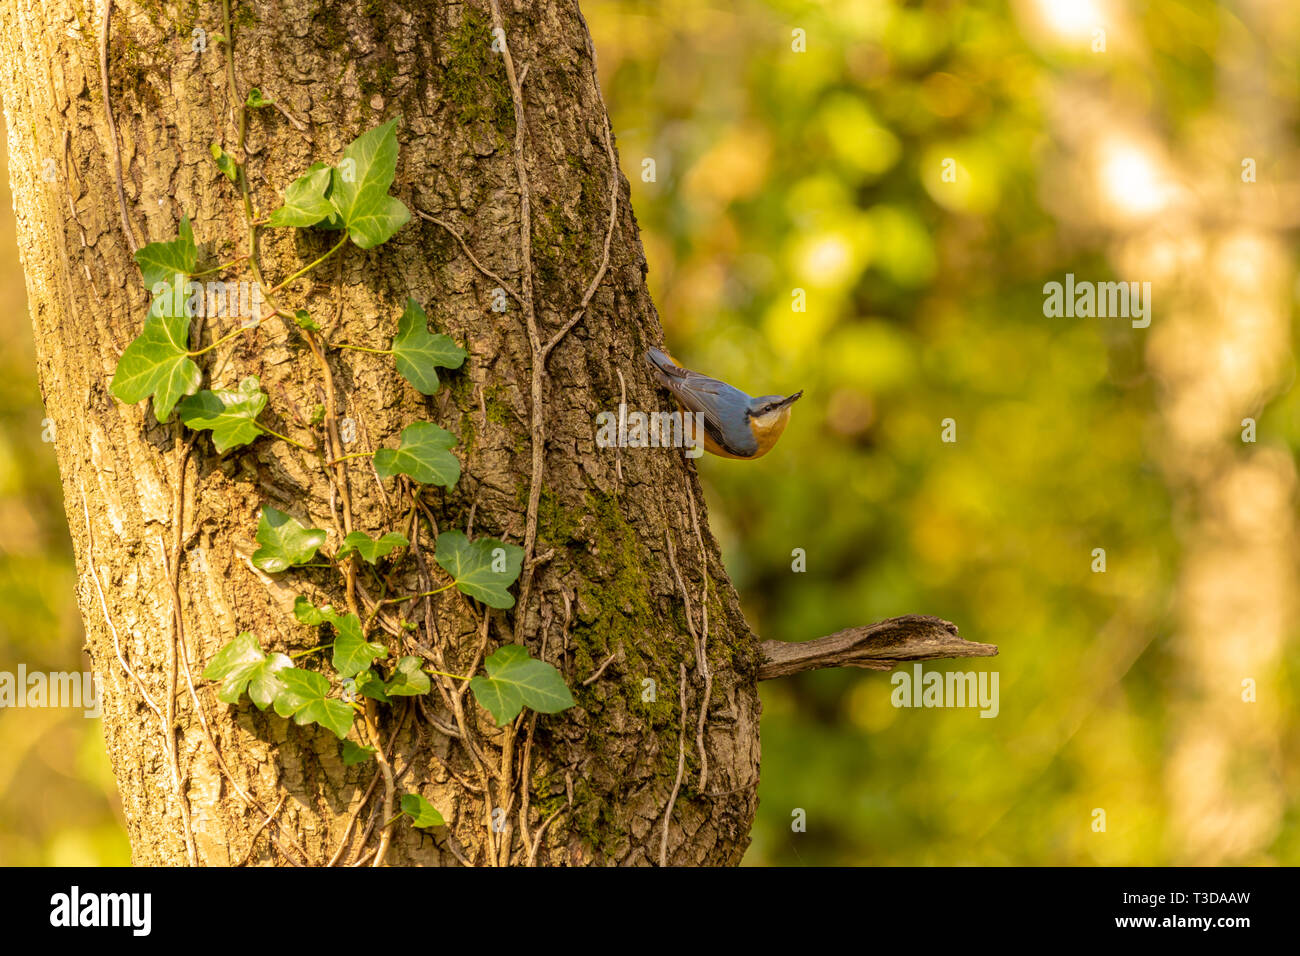 Retrato de la vida silvestre de color trepador adulto posado sobre-lado del árbol preparado para volar con insecto en el pico. Tomadas en Poole, Dorset, Inglaterra. Foto de stock